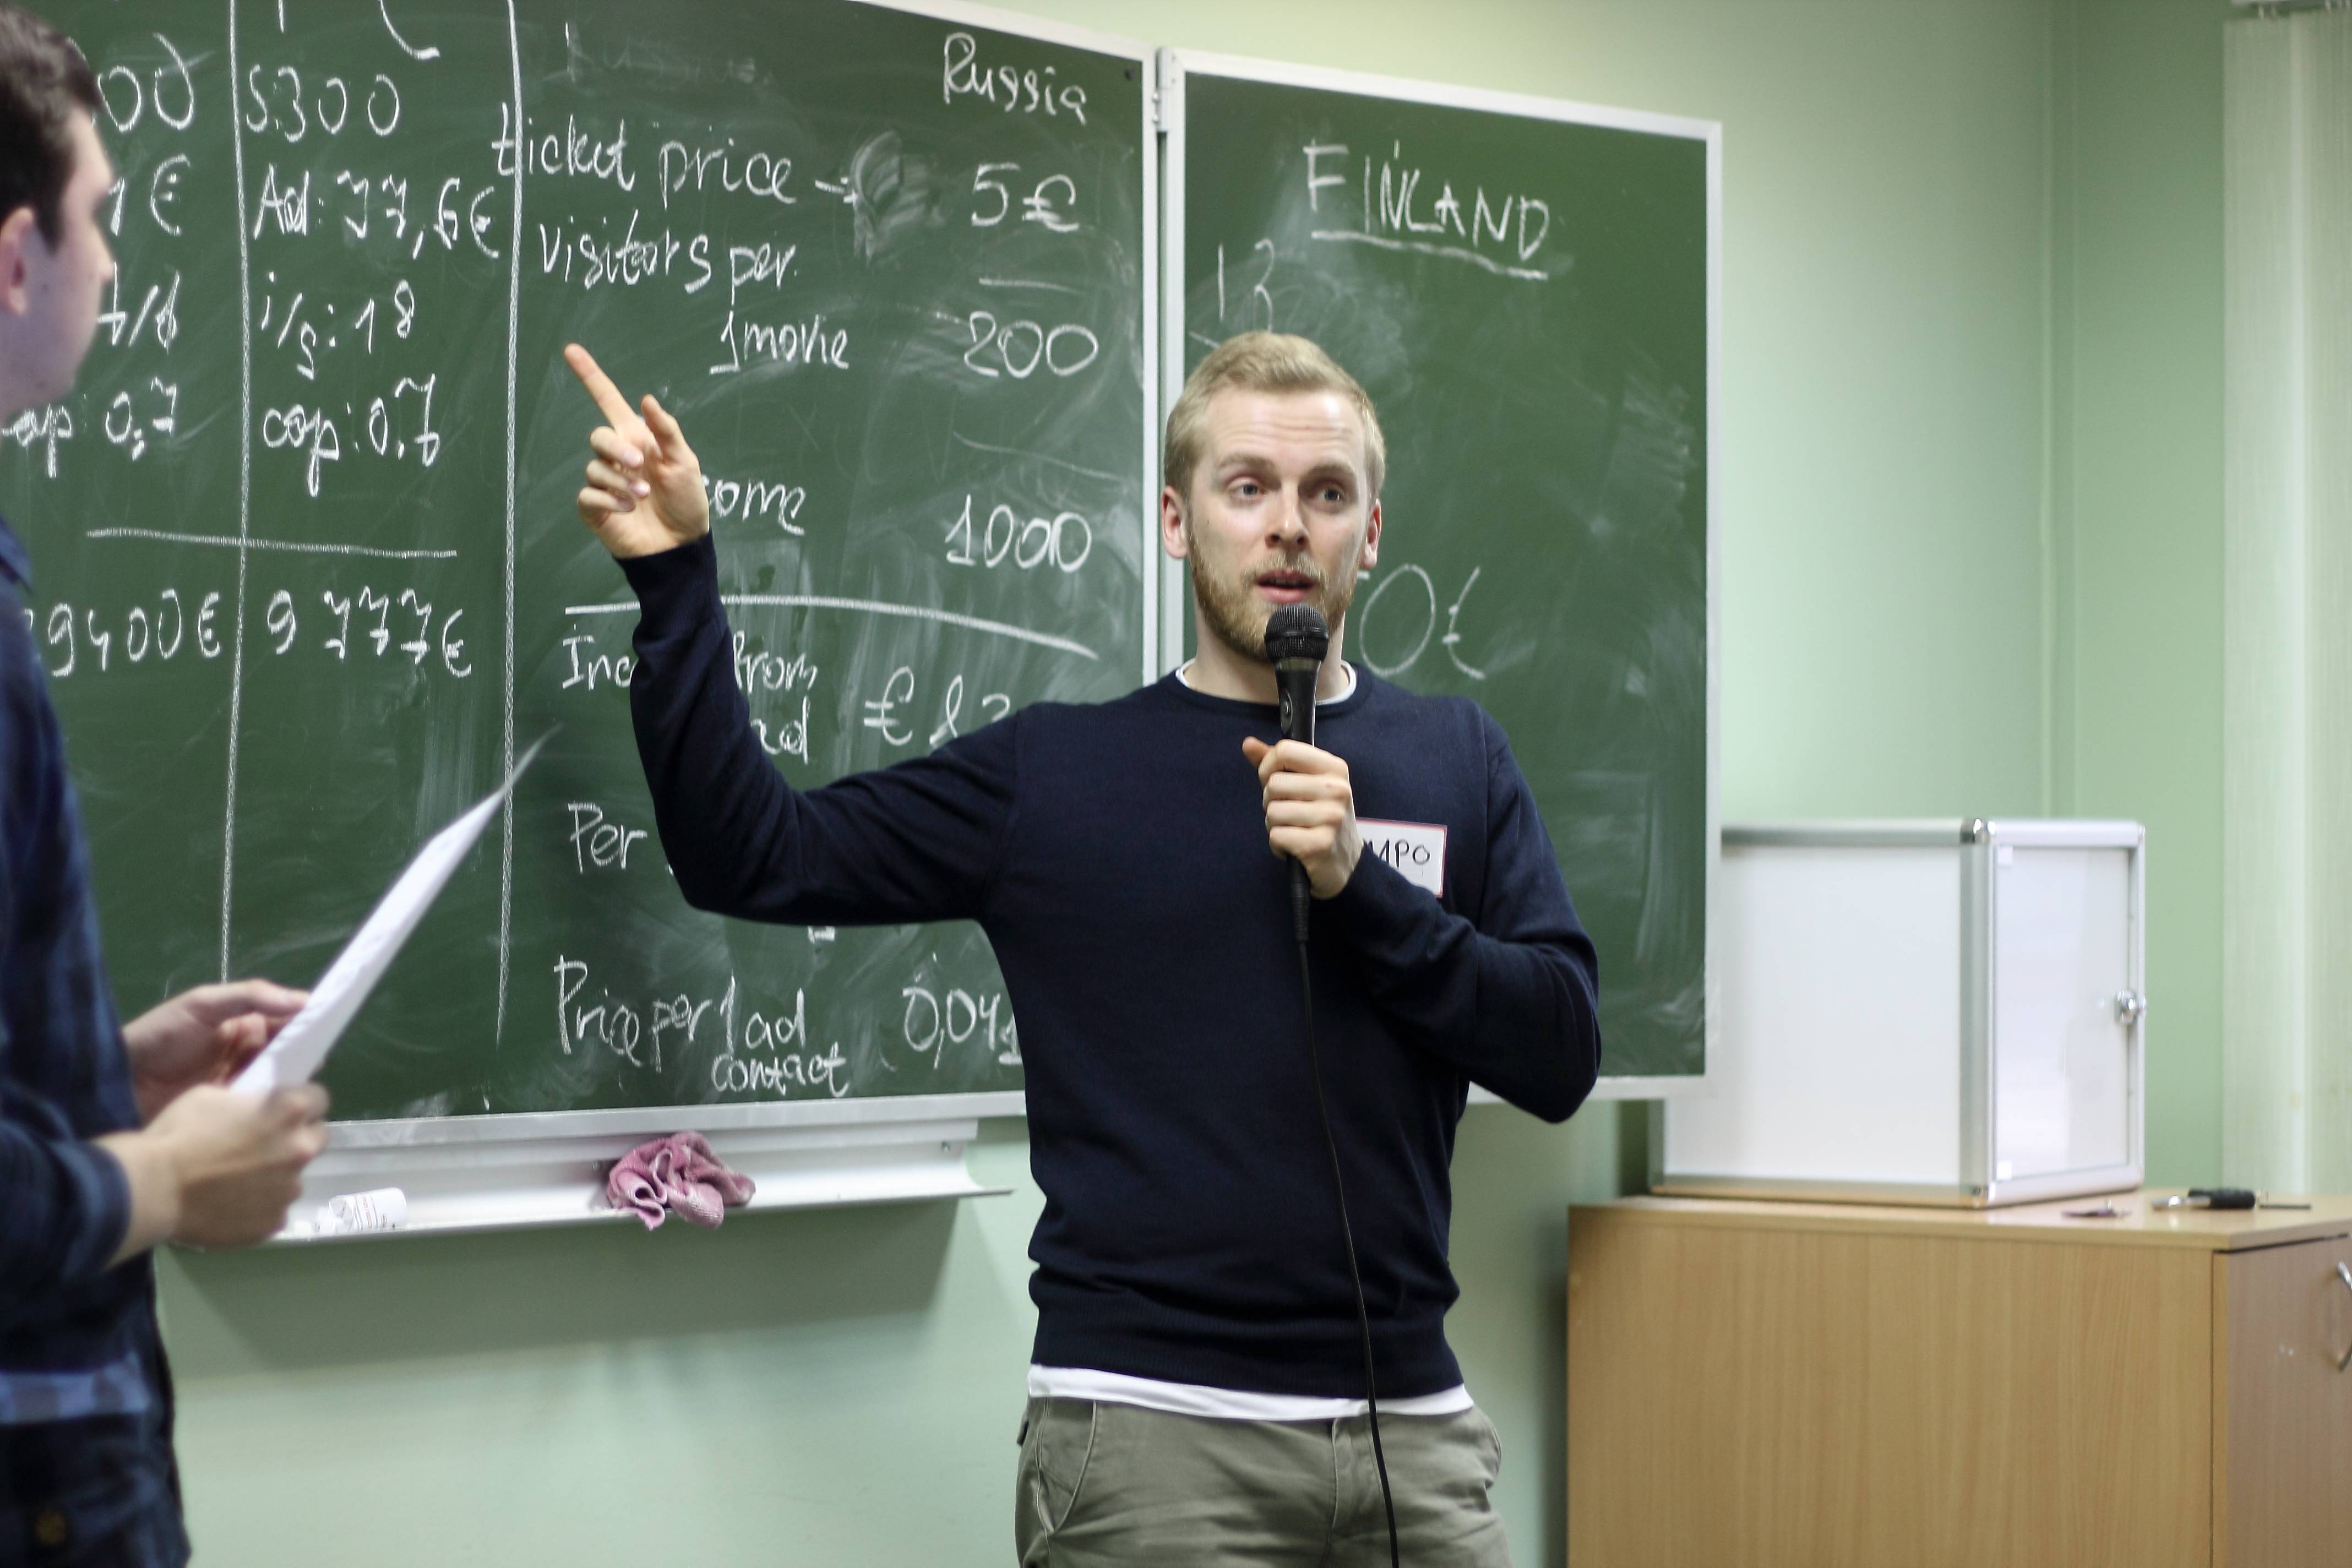 Учеба в финляндии для иностранцев: особенности, продолжительность, стоимость